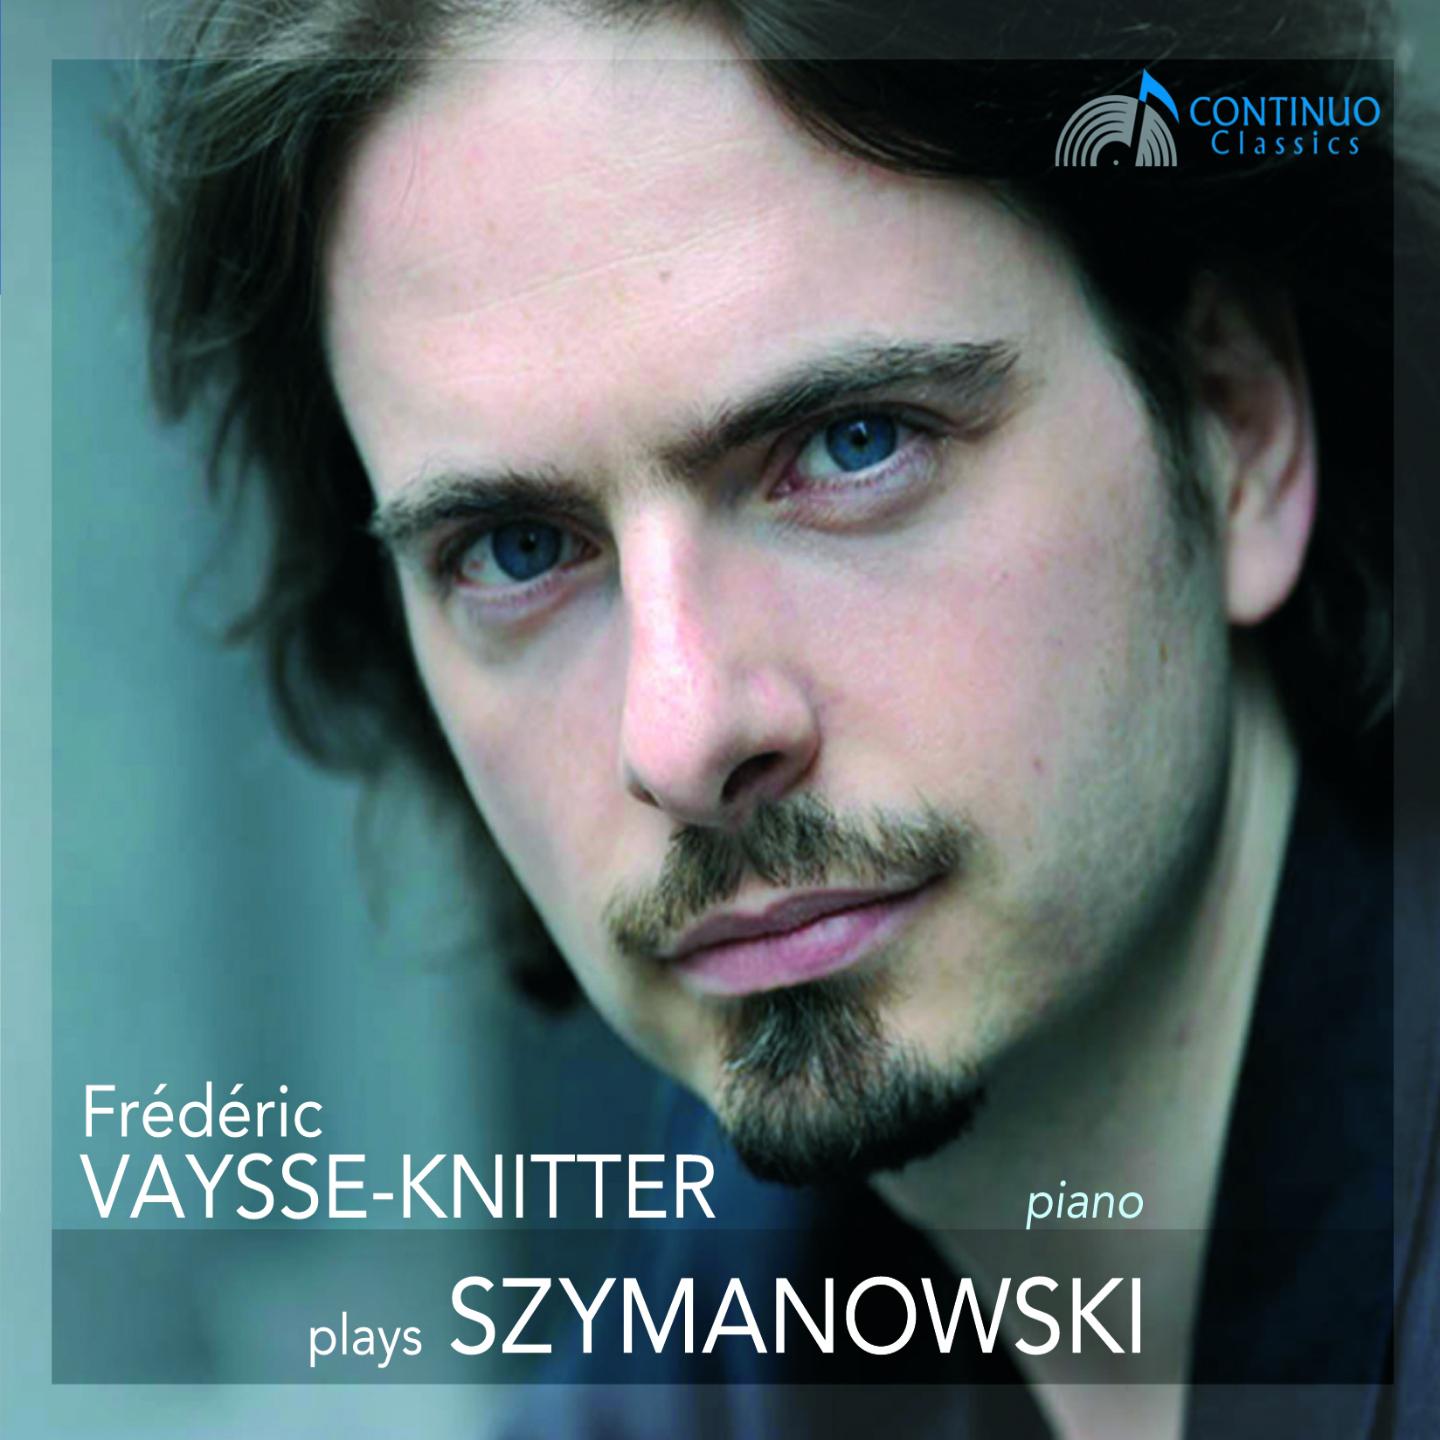 Fre de ric VaysseKnitter Plays Szymanowski